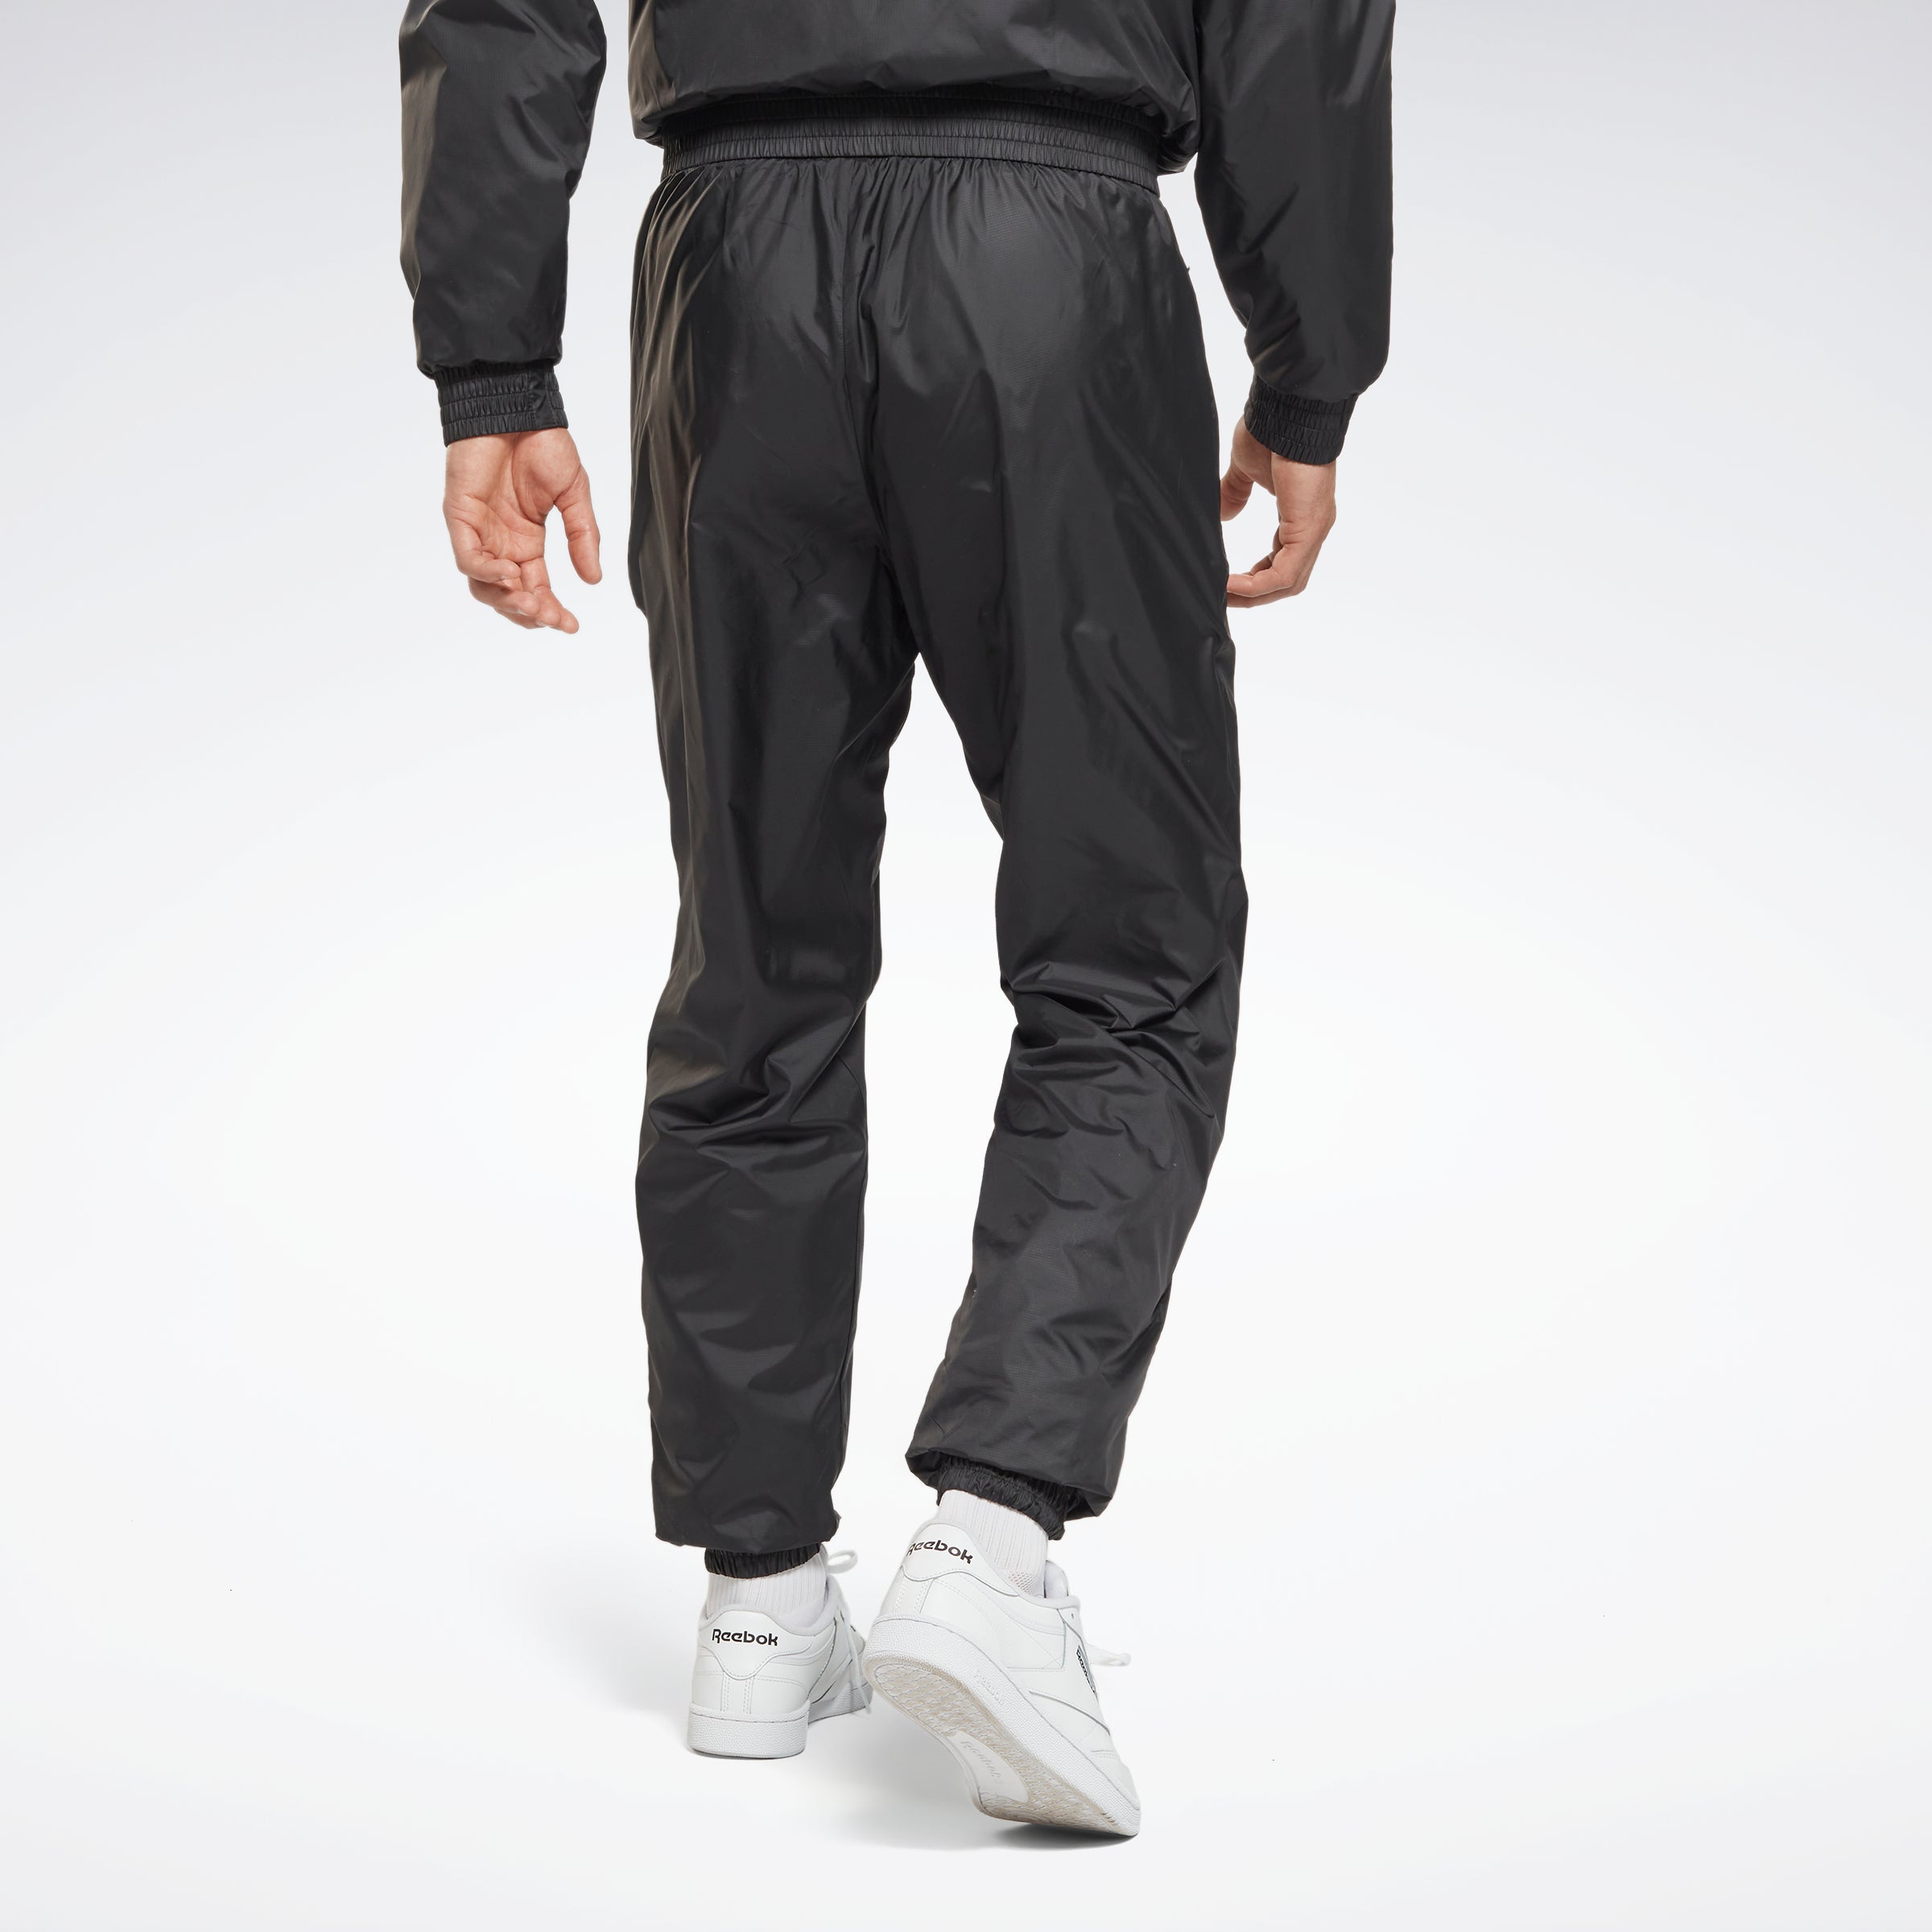 Reebok Apparel Men Outerwear Fleece-Lined Trousers Black – Reebok